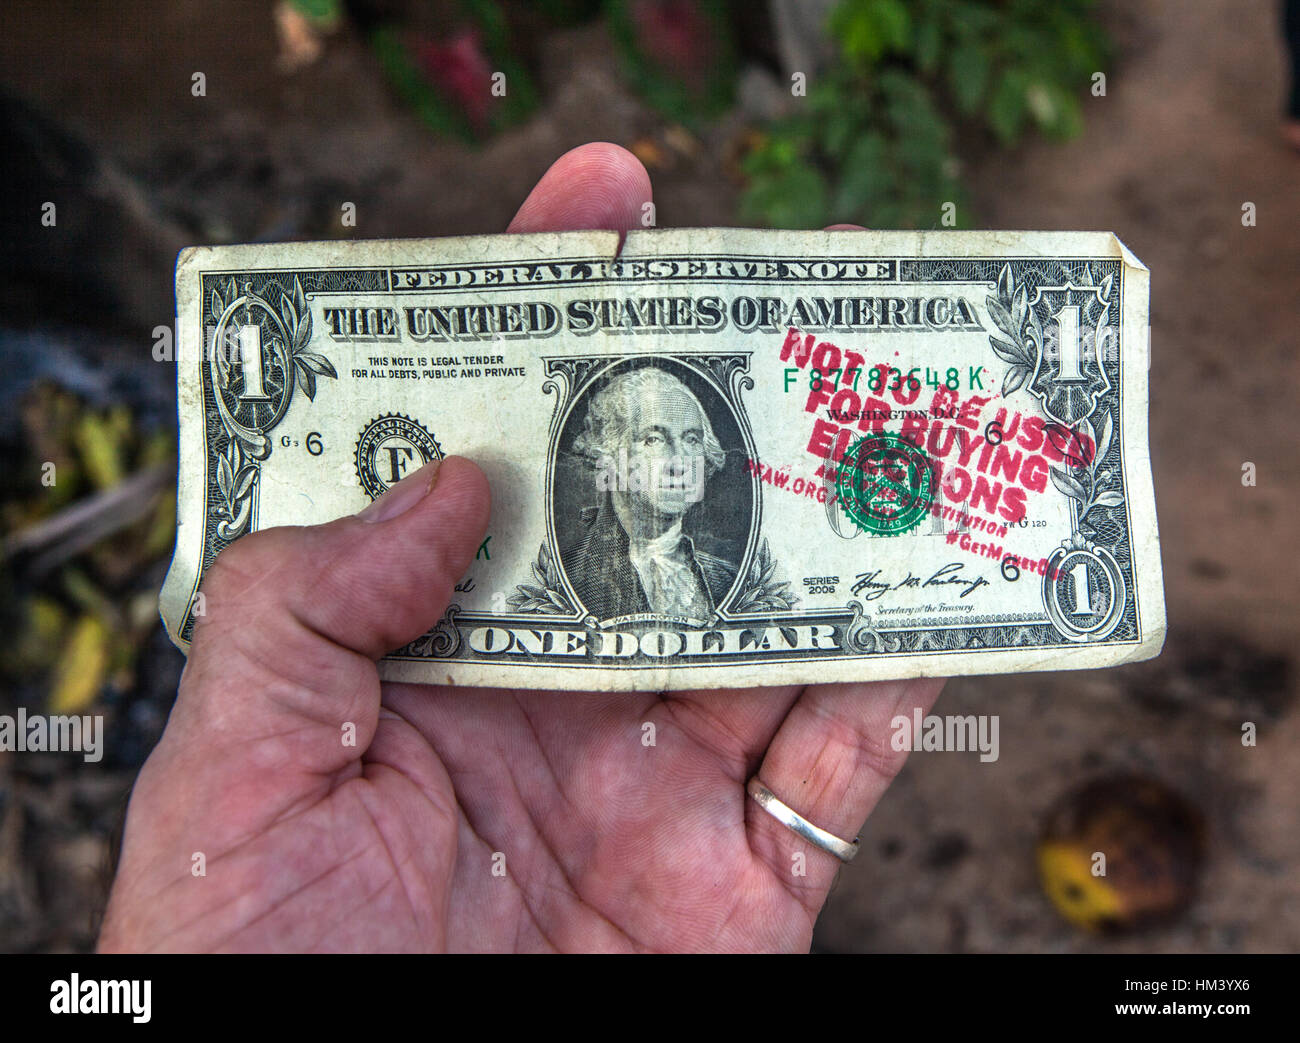 Un dollar bill estampillé par le peuple pour l'American Way organisation anti-Trump l'a dit, 'ne pas être utilisé pour acheter des élections". Banque D'Images